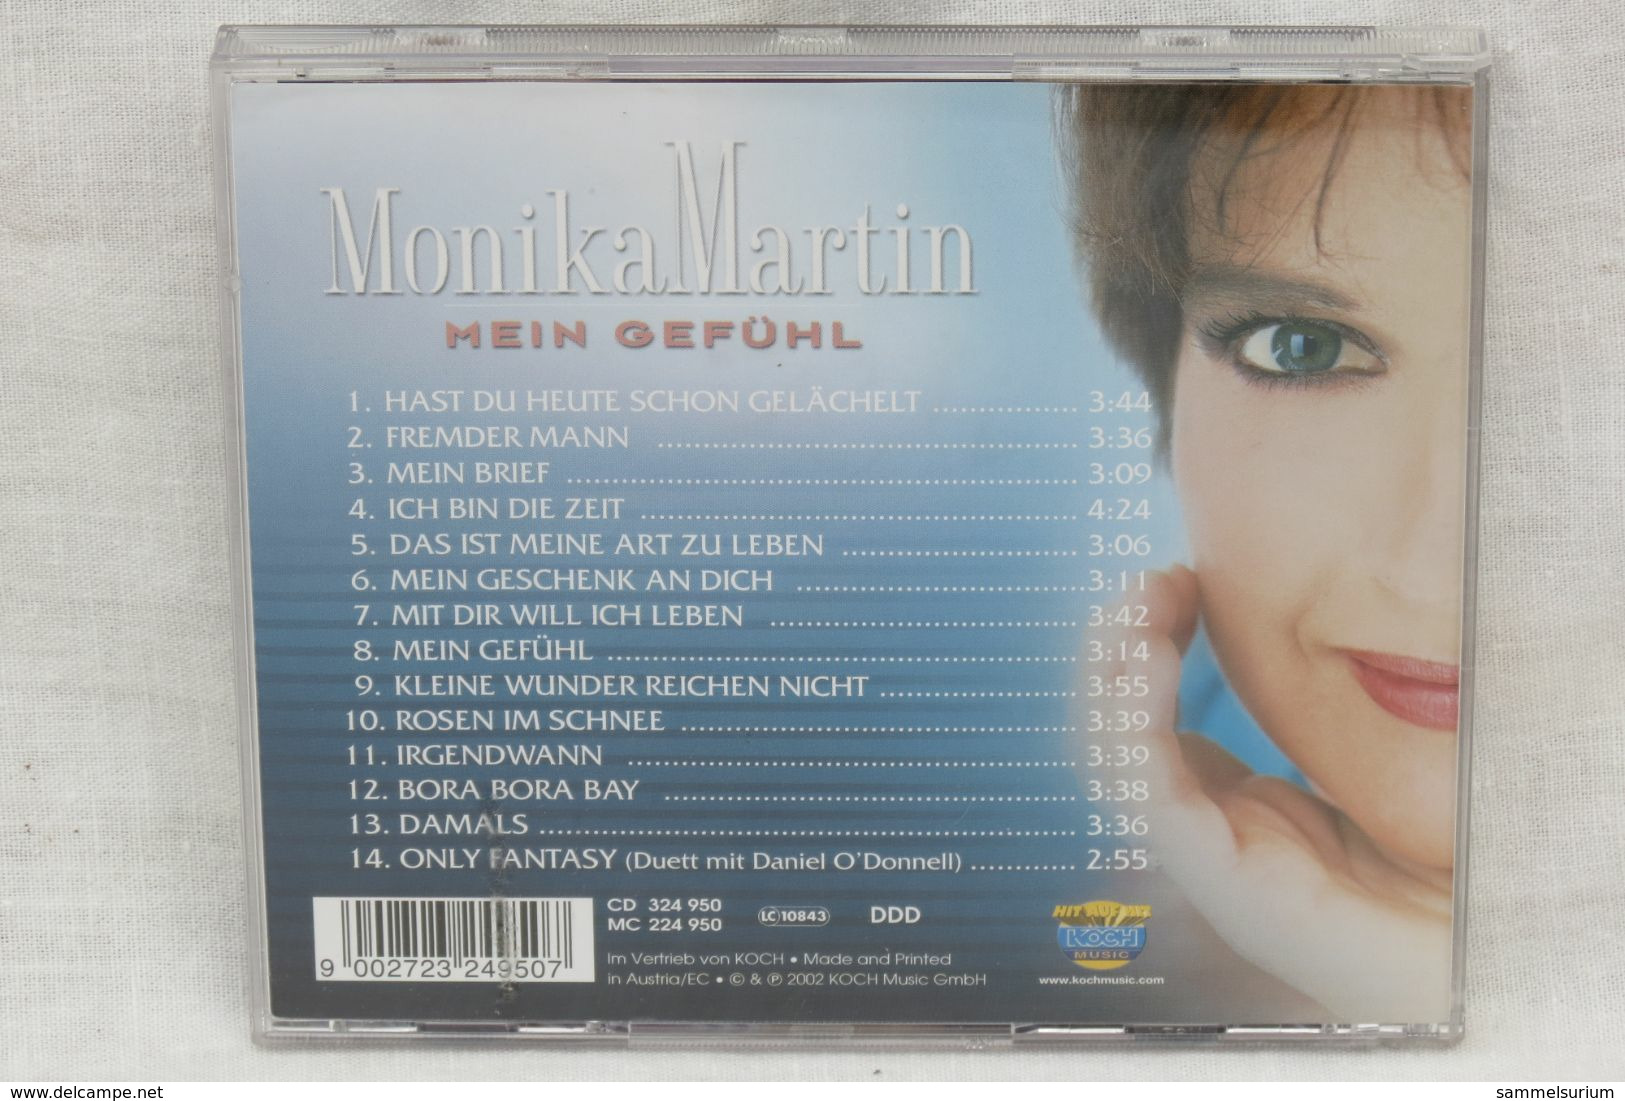 CD "Monika Martin" Mein Gefühl - Autres - Musique Allemande